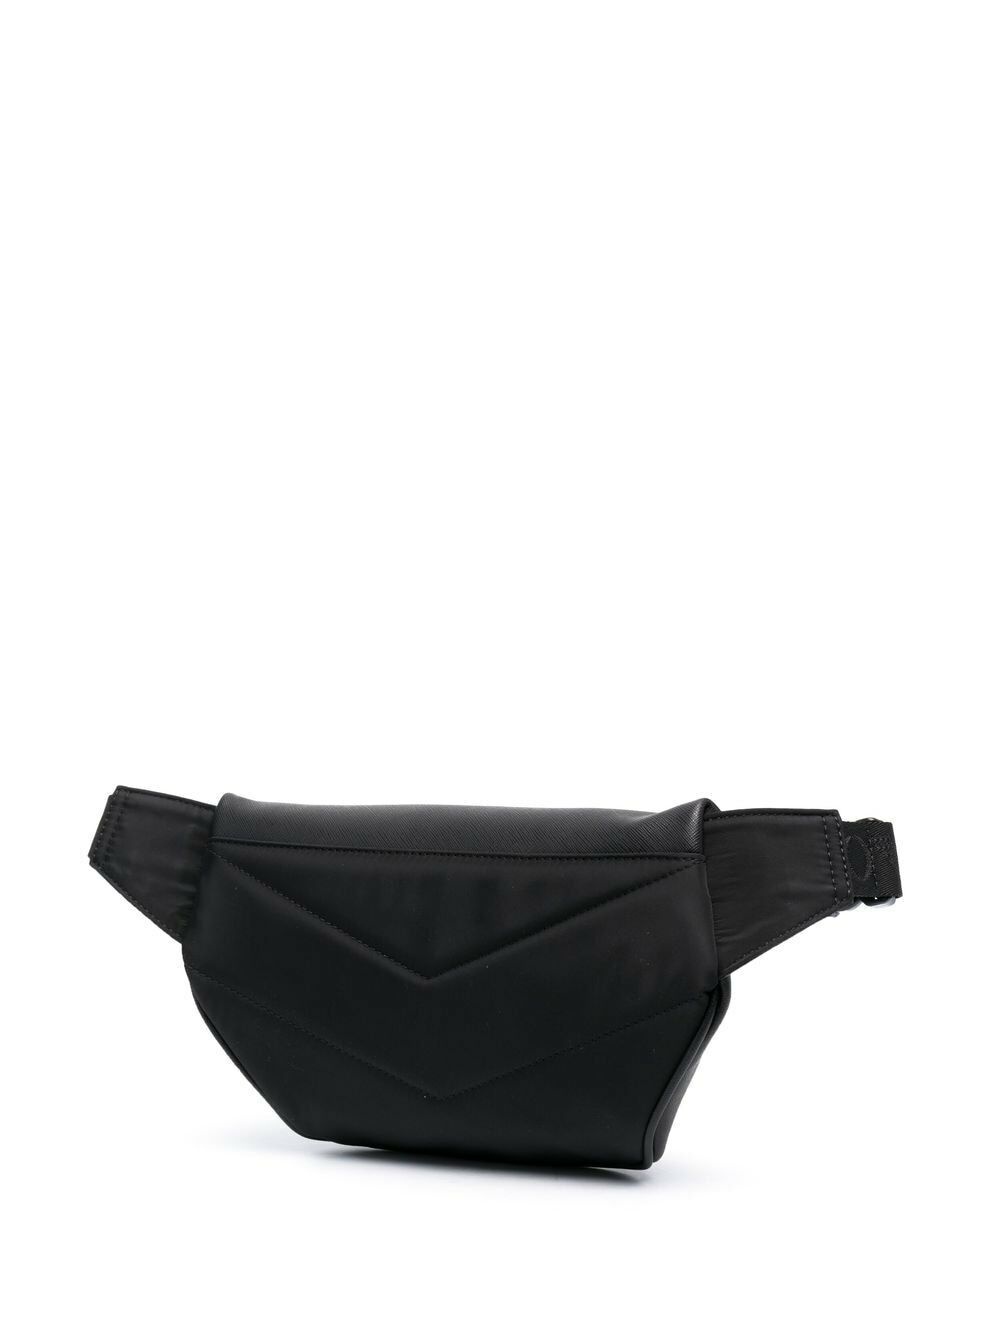 EMPORIO ARMANI - Small Leather Beltbag